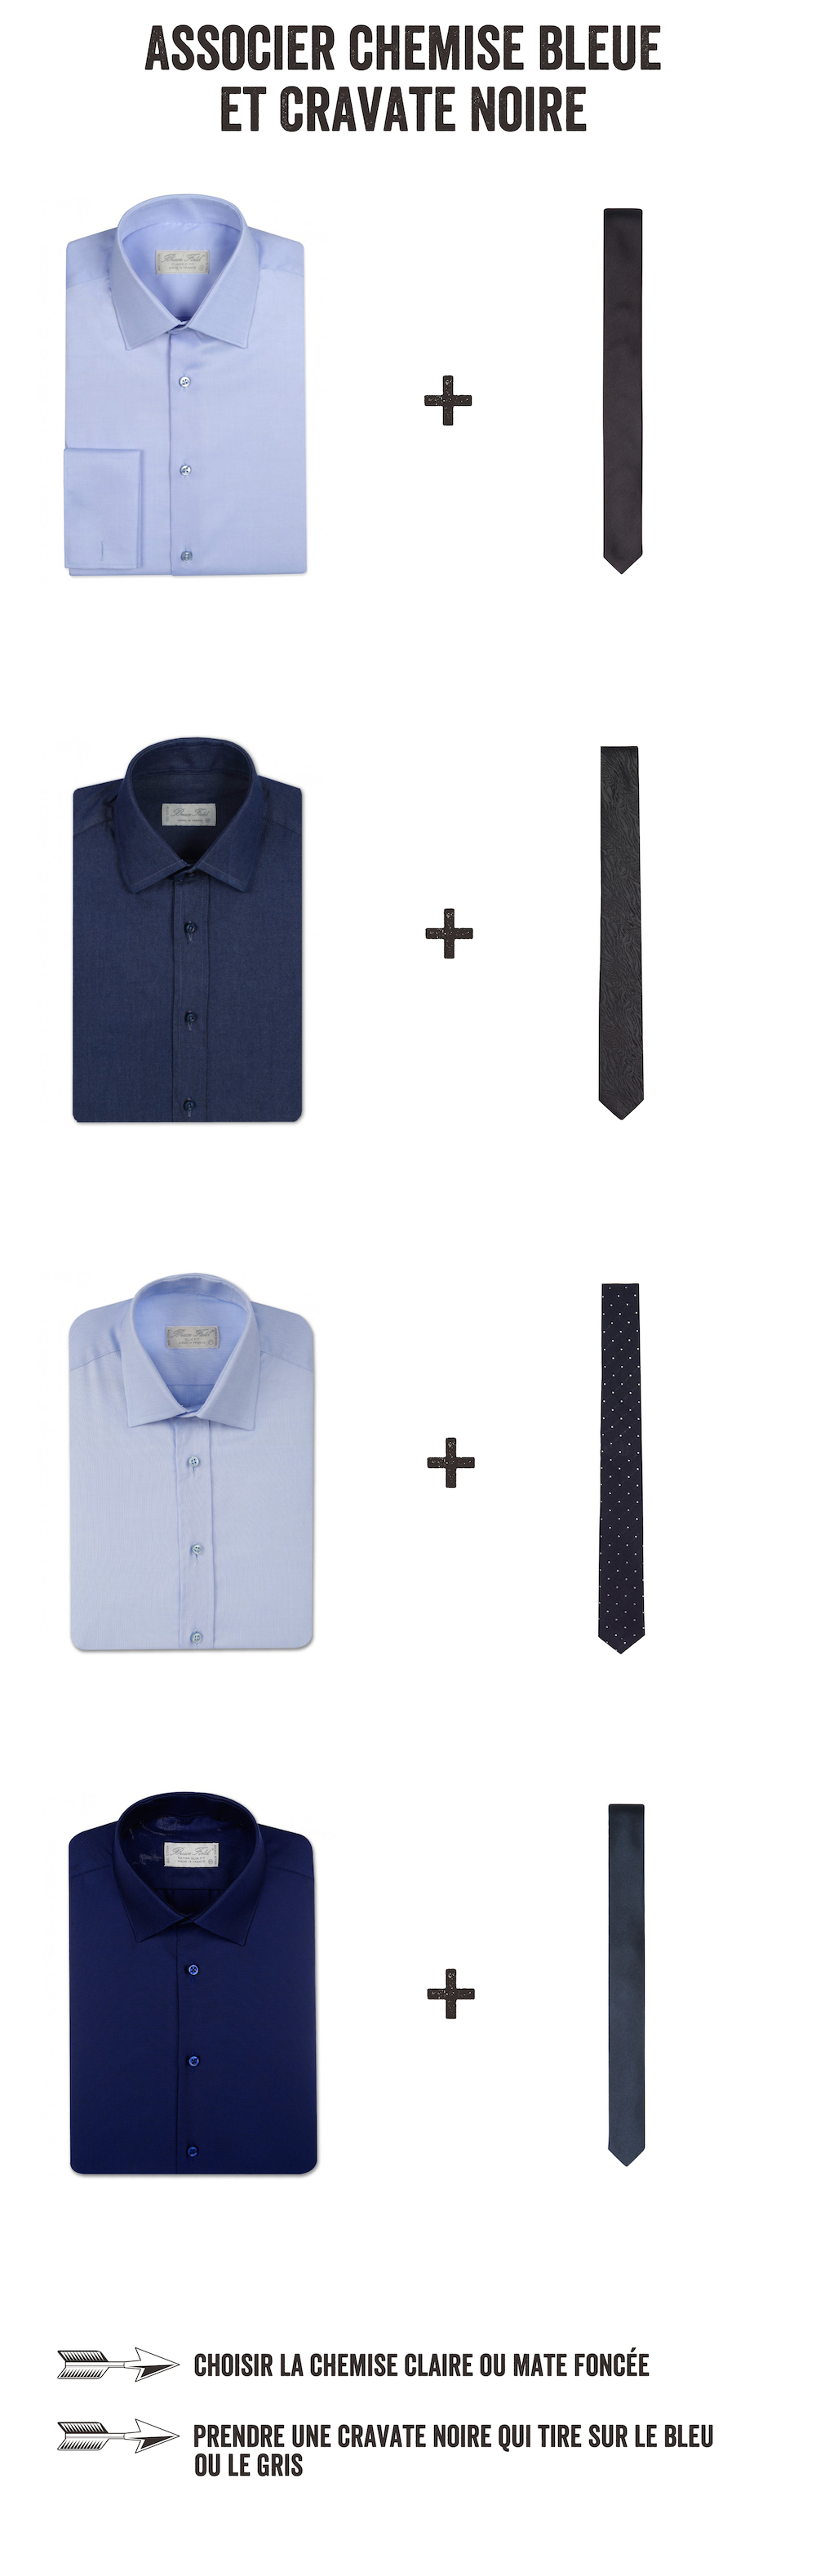 associer chemise bleue et cravate grise1